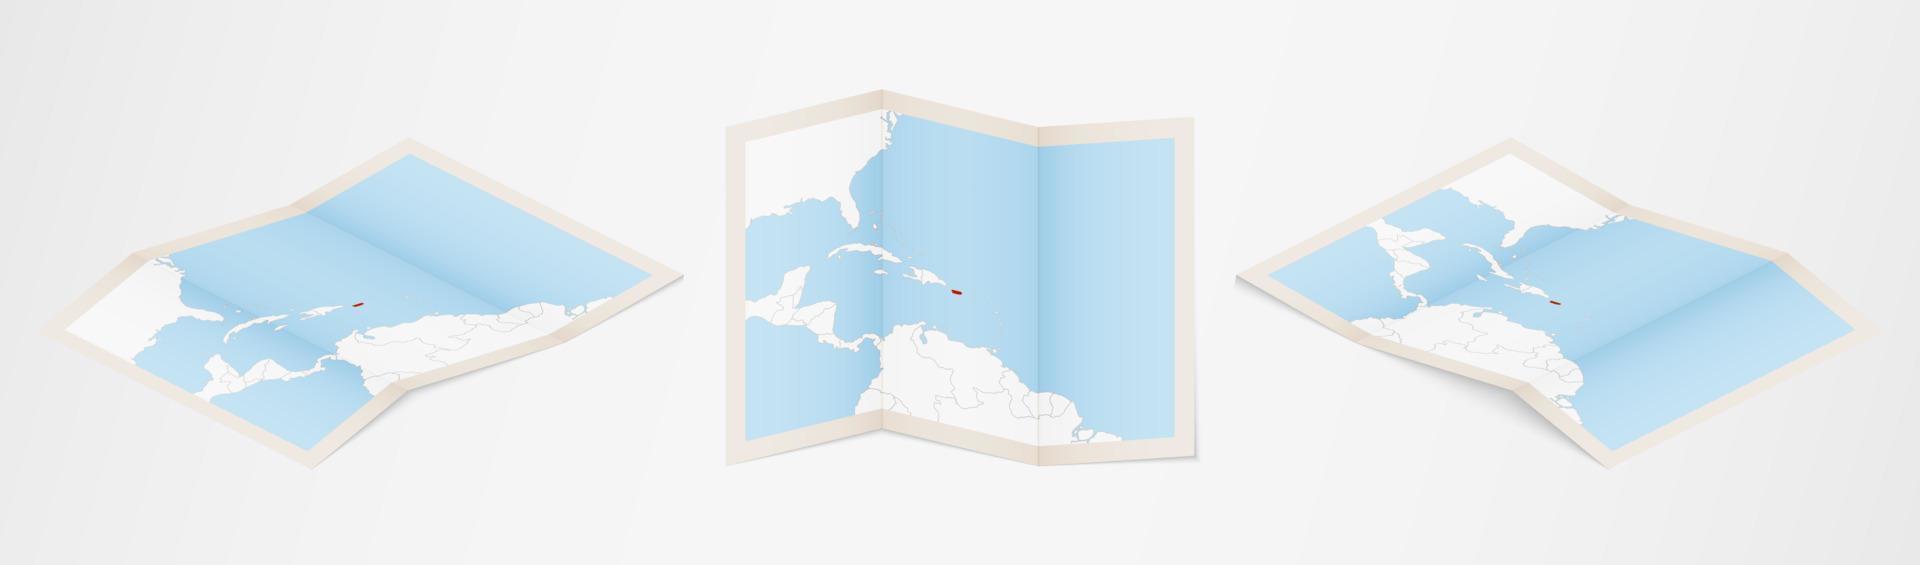 gevouwen kaart van puerto rico in drie verschillend versies. vector